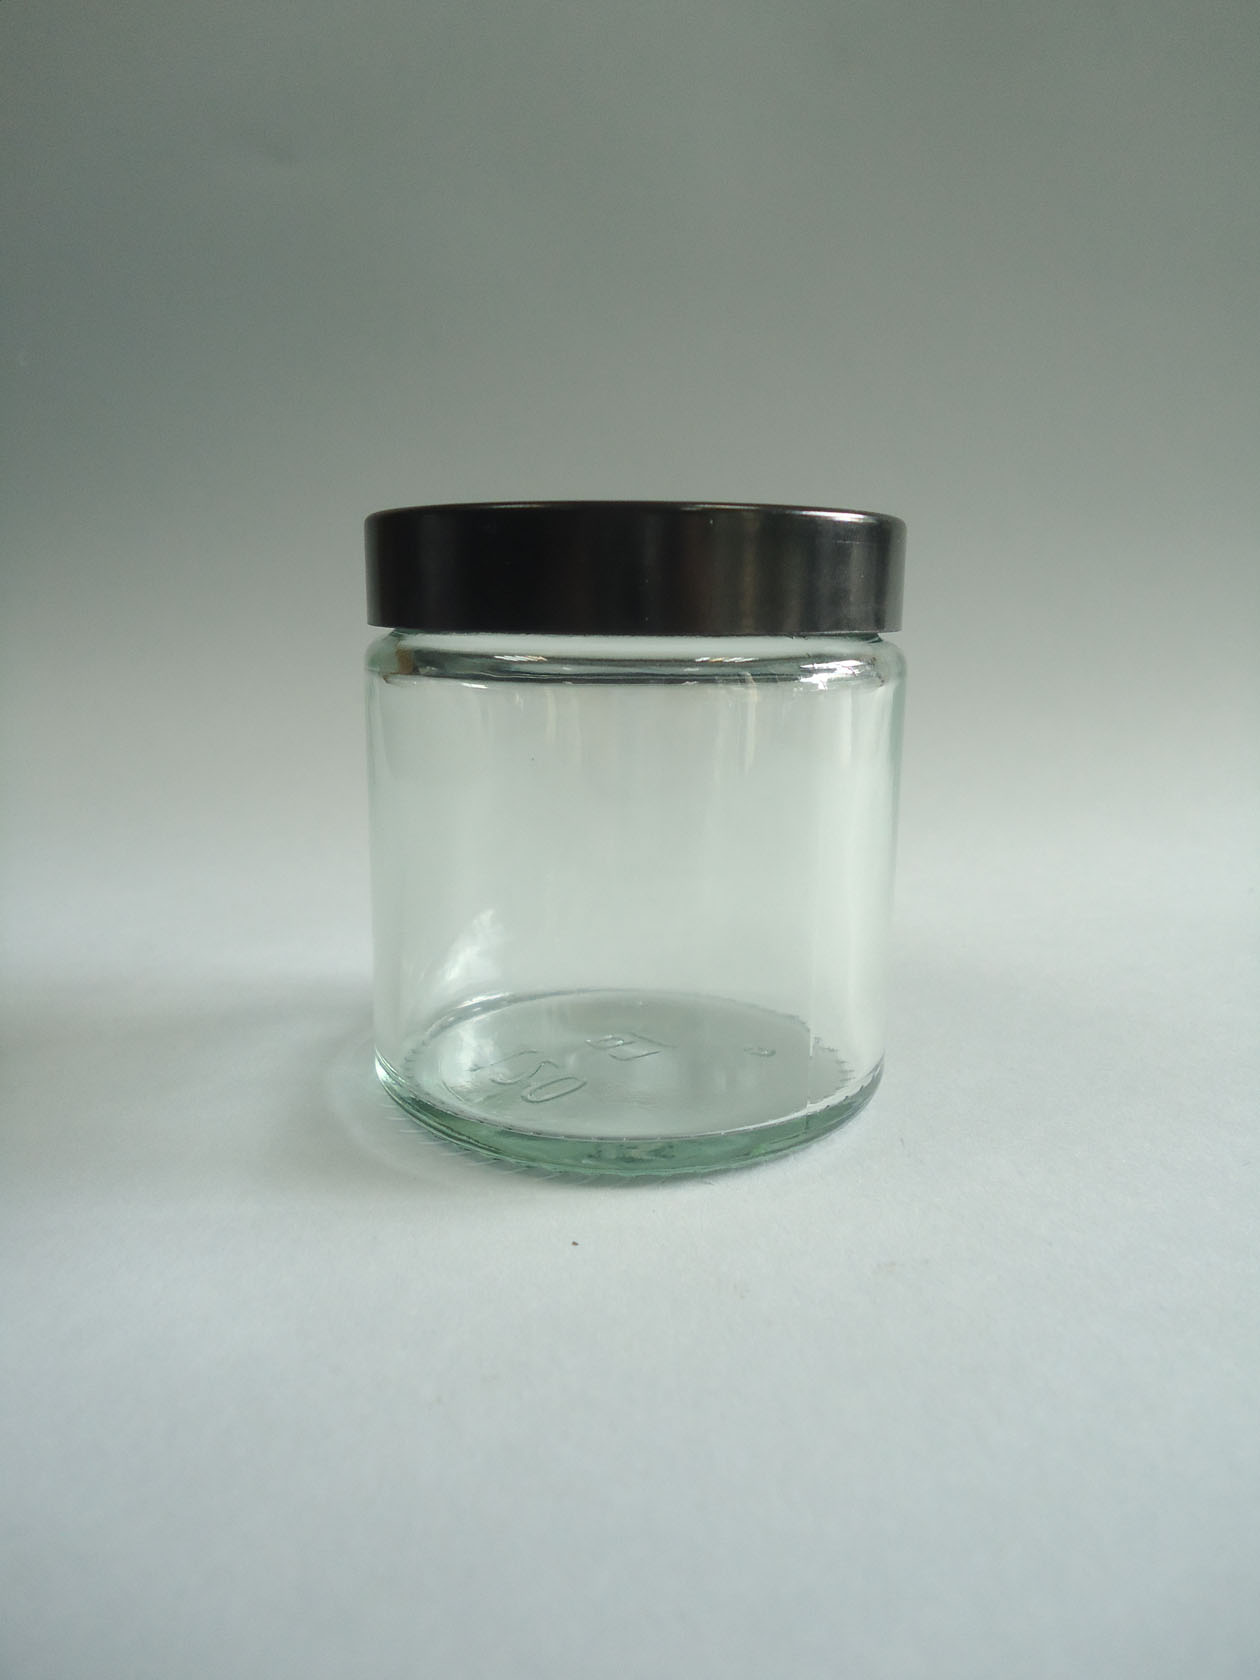 Transparente: Bote vidrio tapa baquelita negra 120 ml. transparente